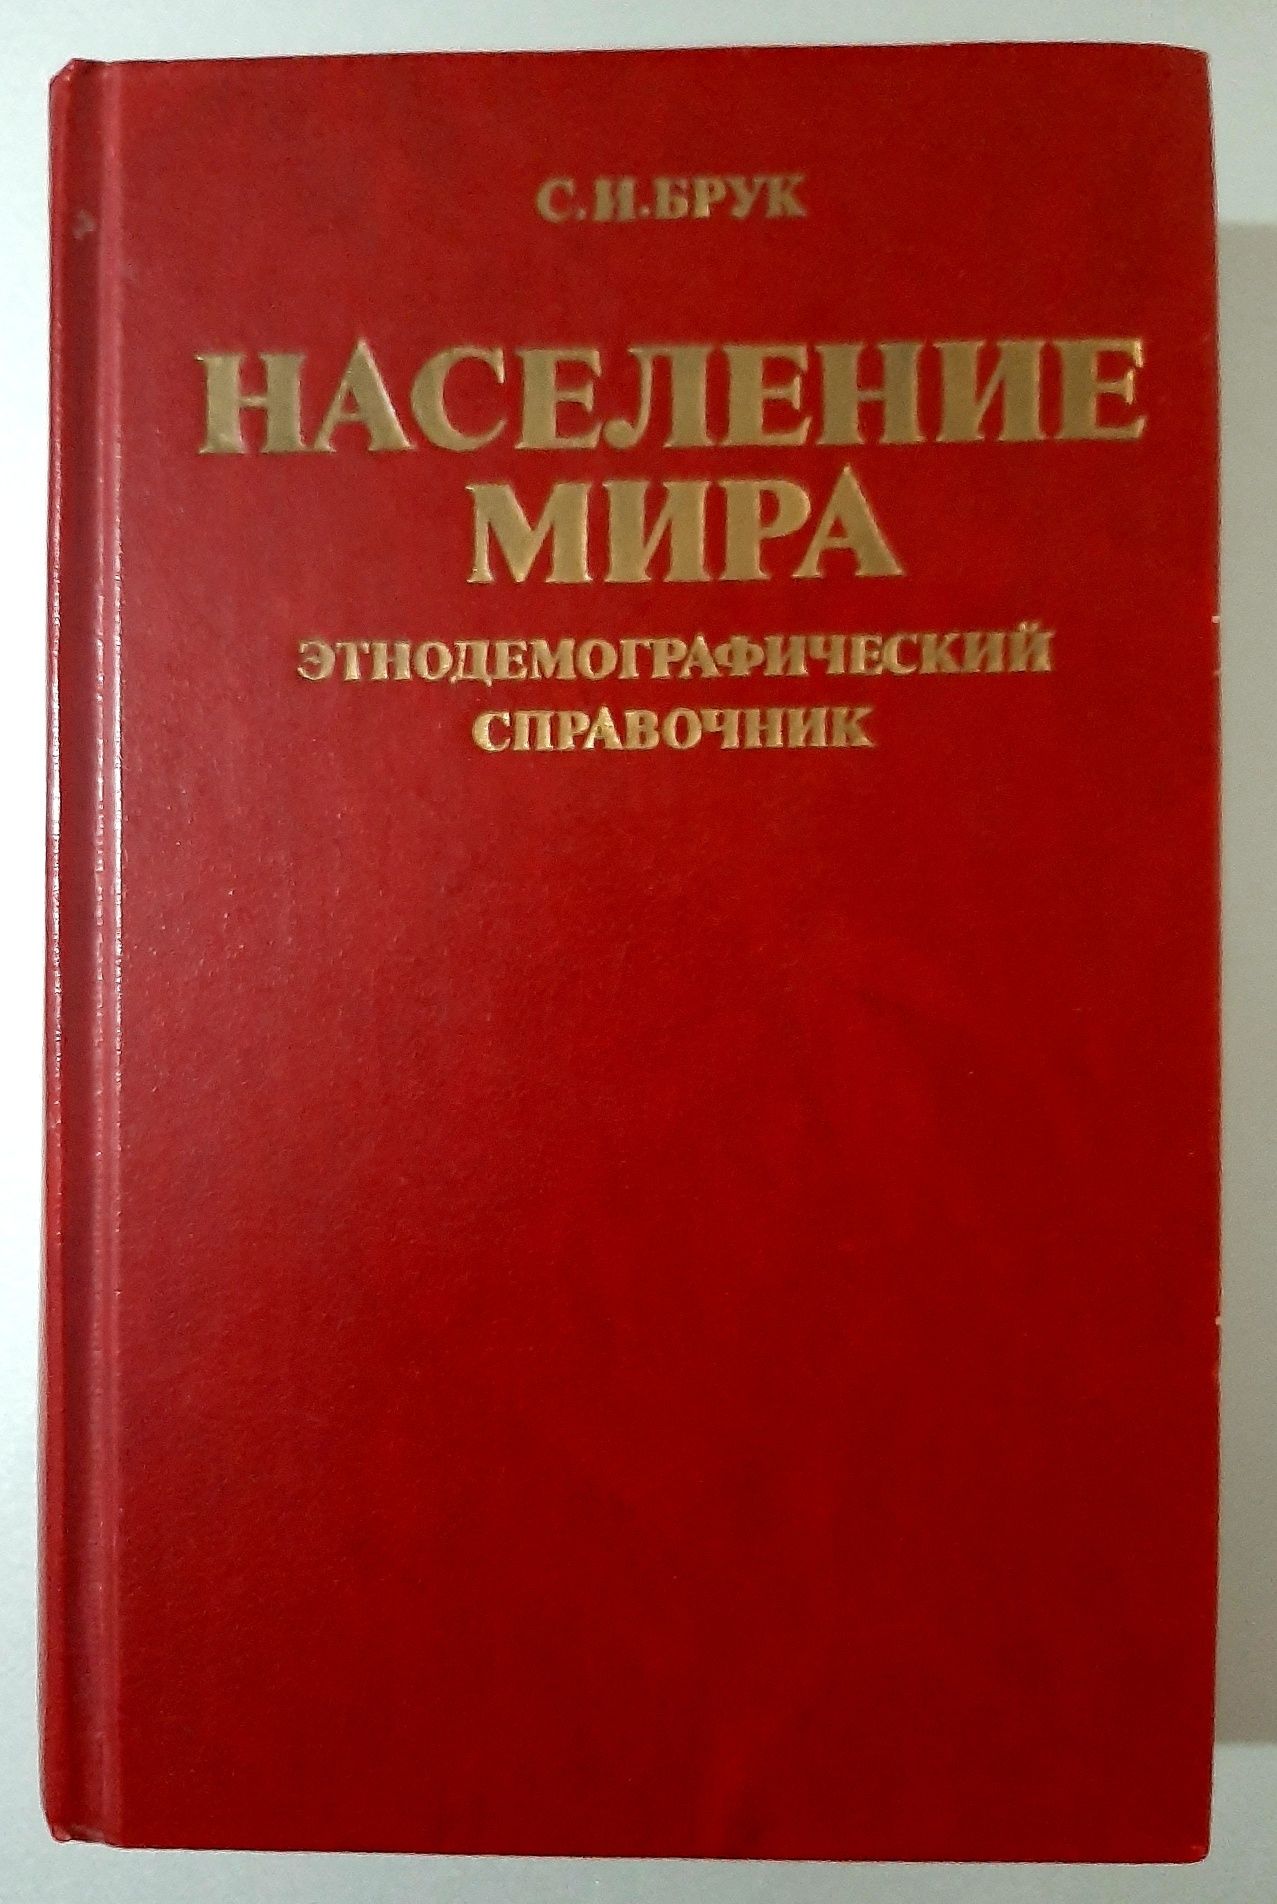 Книги СССР, редкие издания